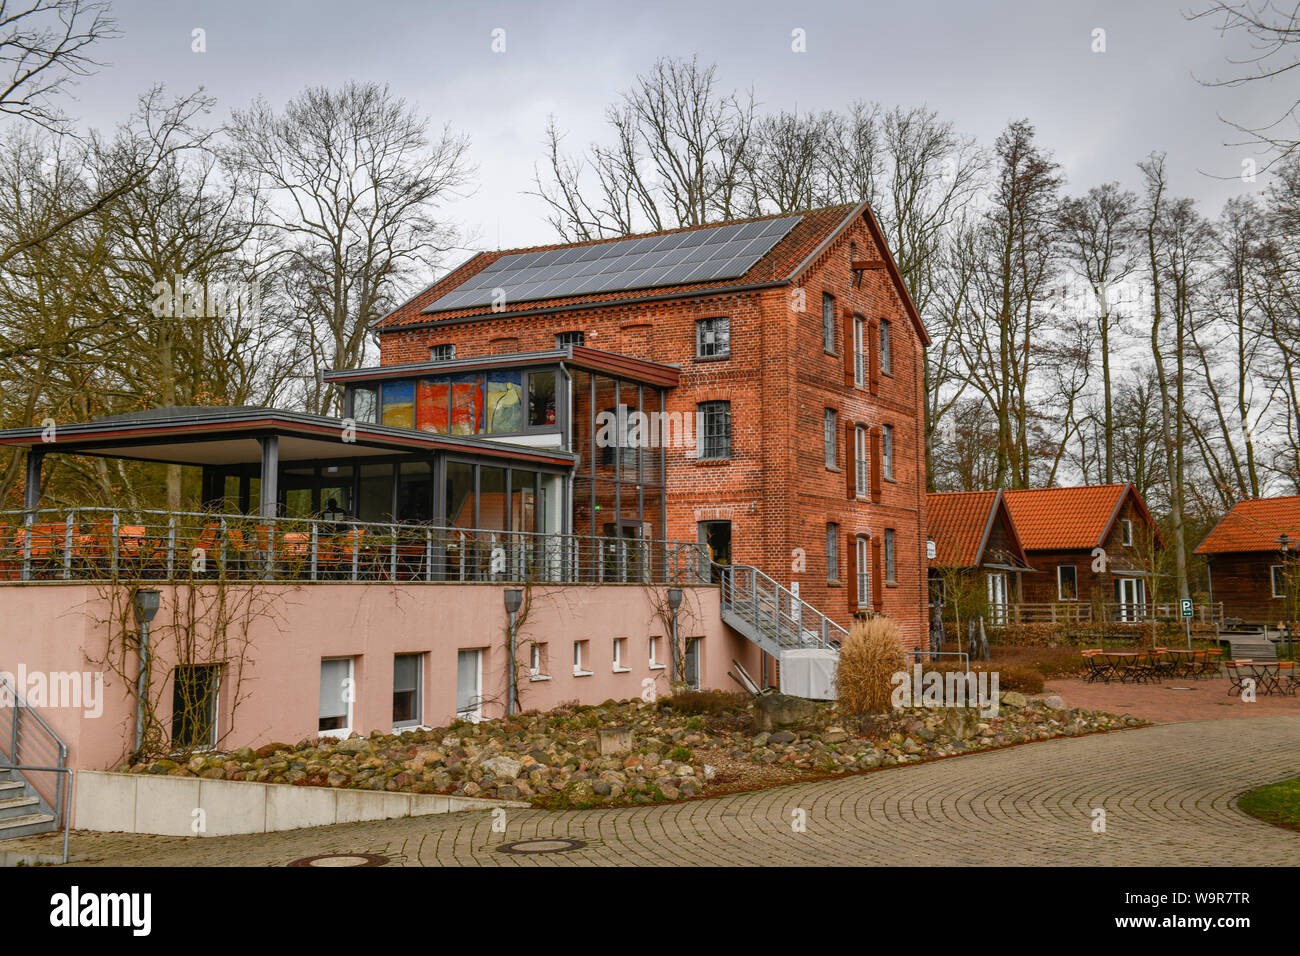 Woltersburger Muehle, Uelzen, Niedersachsen, Deutschland, Woltersburger Mühle Stock Photo